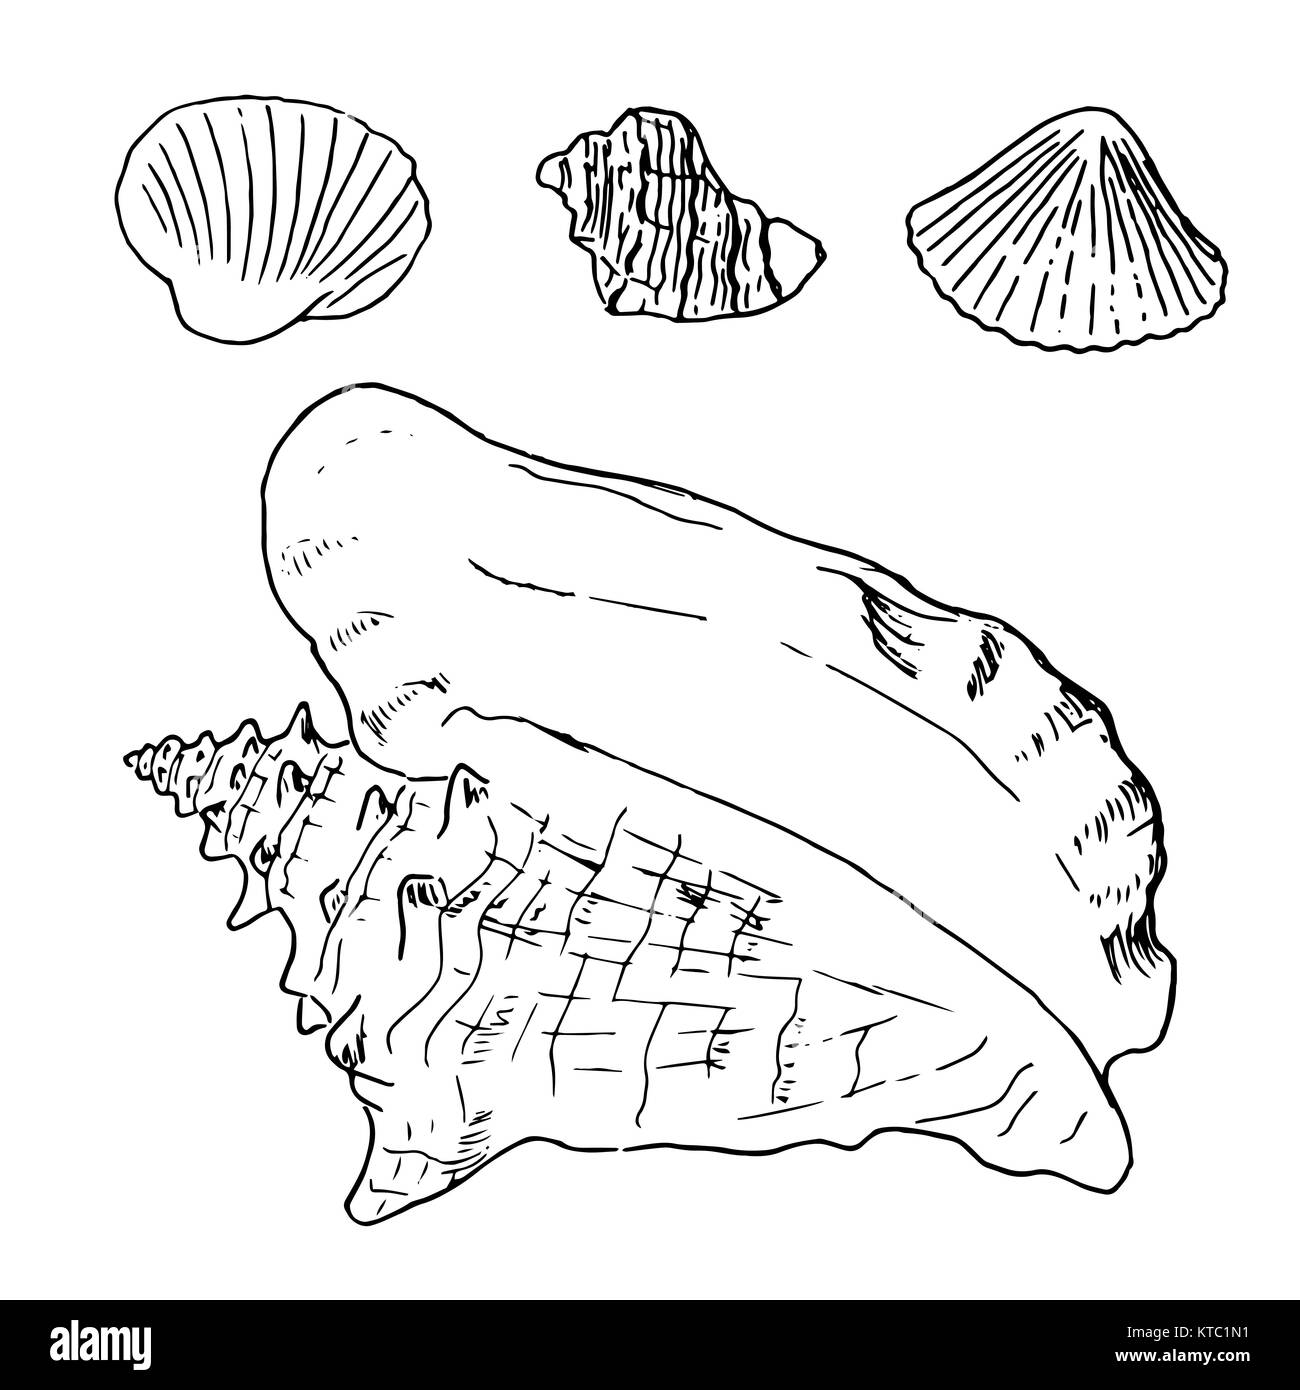 Ensemble de divers coquillages, mollusques belle illustration croquis Banque D'Images